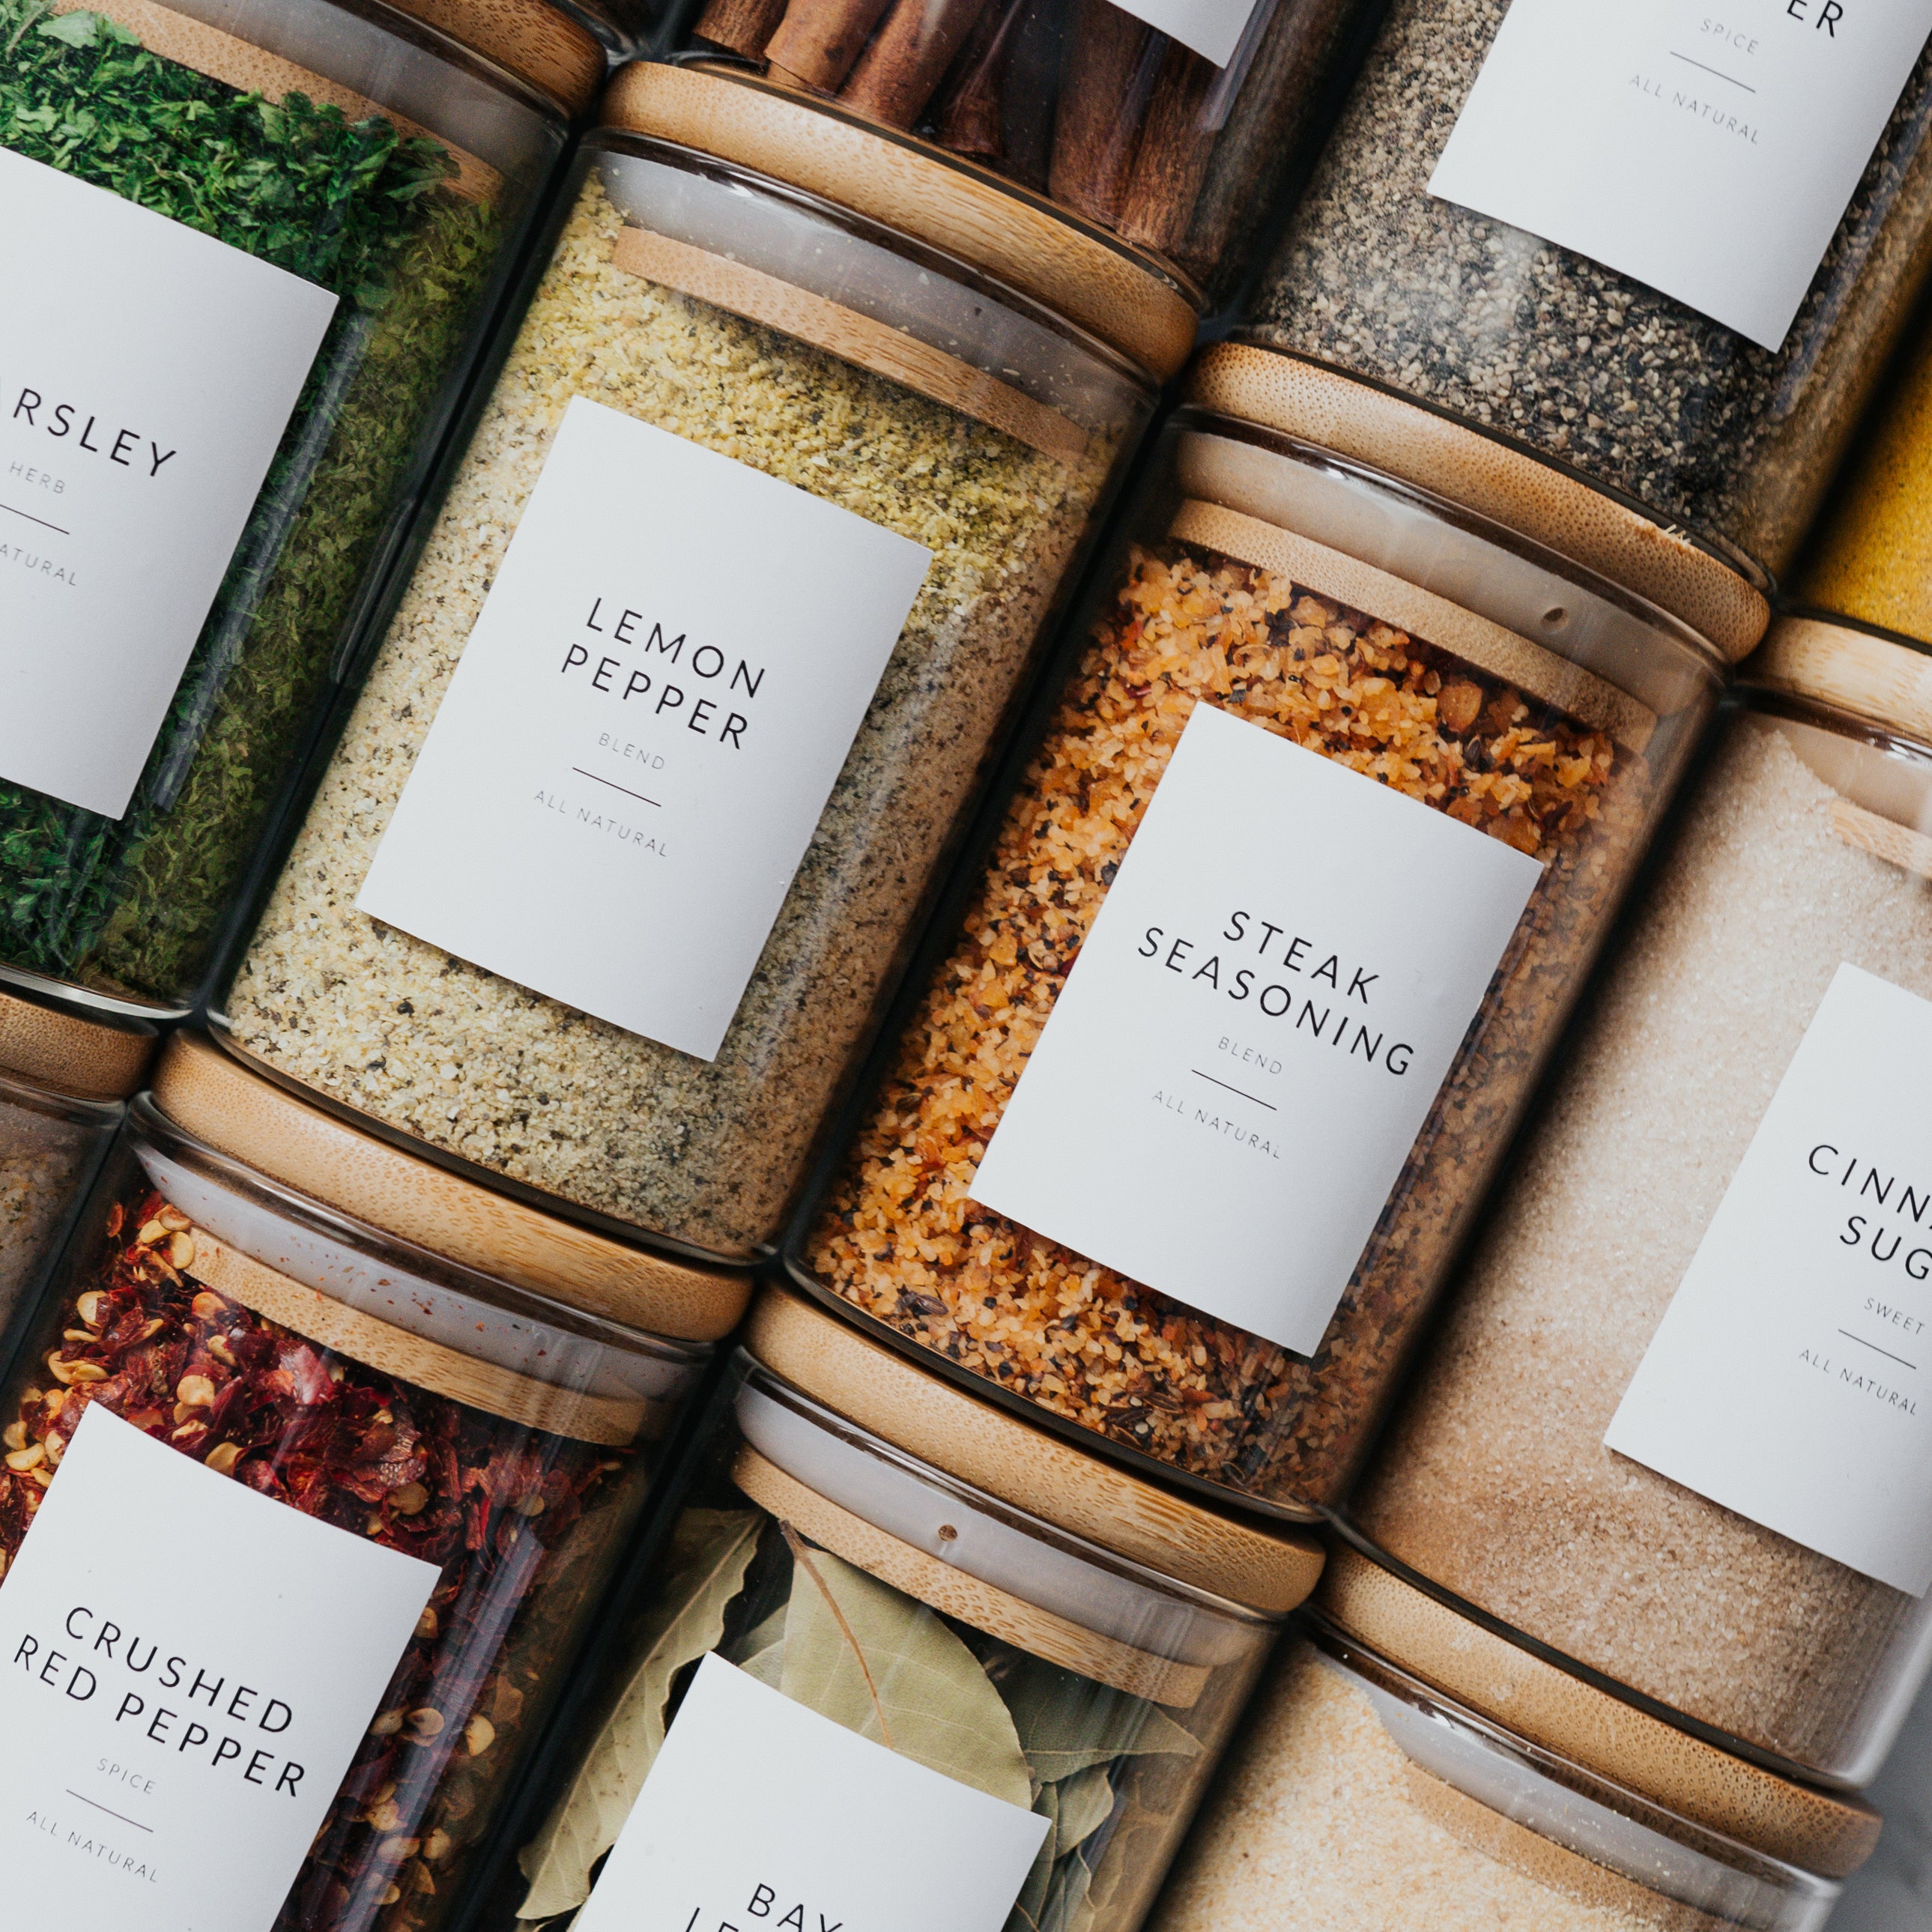 Etiquettes « Spice minimalist labels » – Designed by Cloé